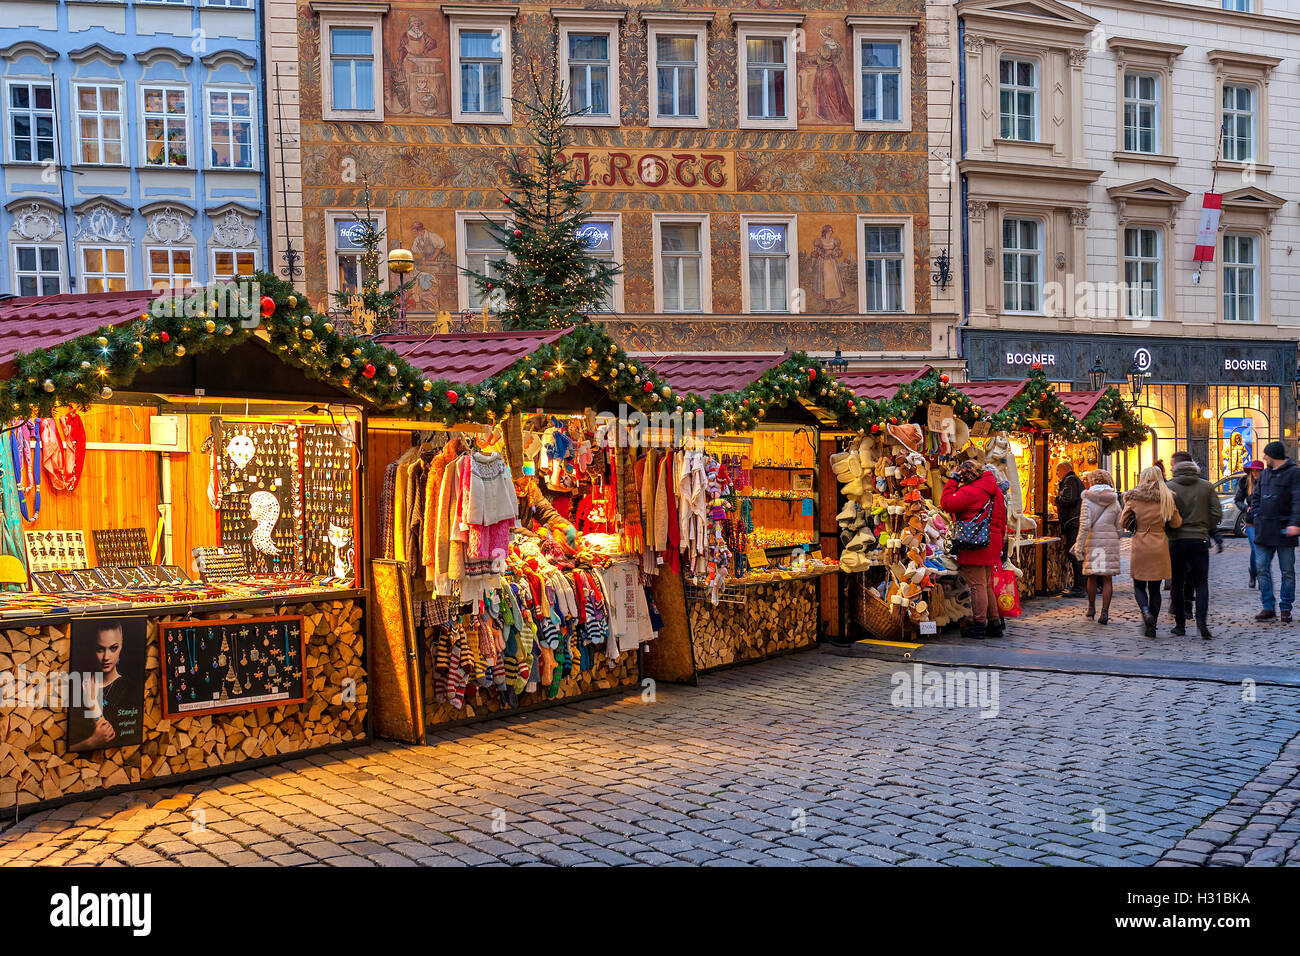 Holzbuden in der Prager Altstadt bietet Souvenirs und Produkte während der traditionelle Weihnachtsmarkt. Stockfoto